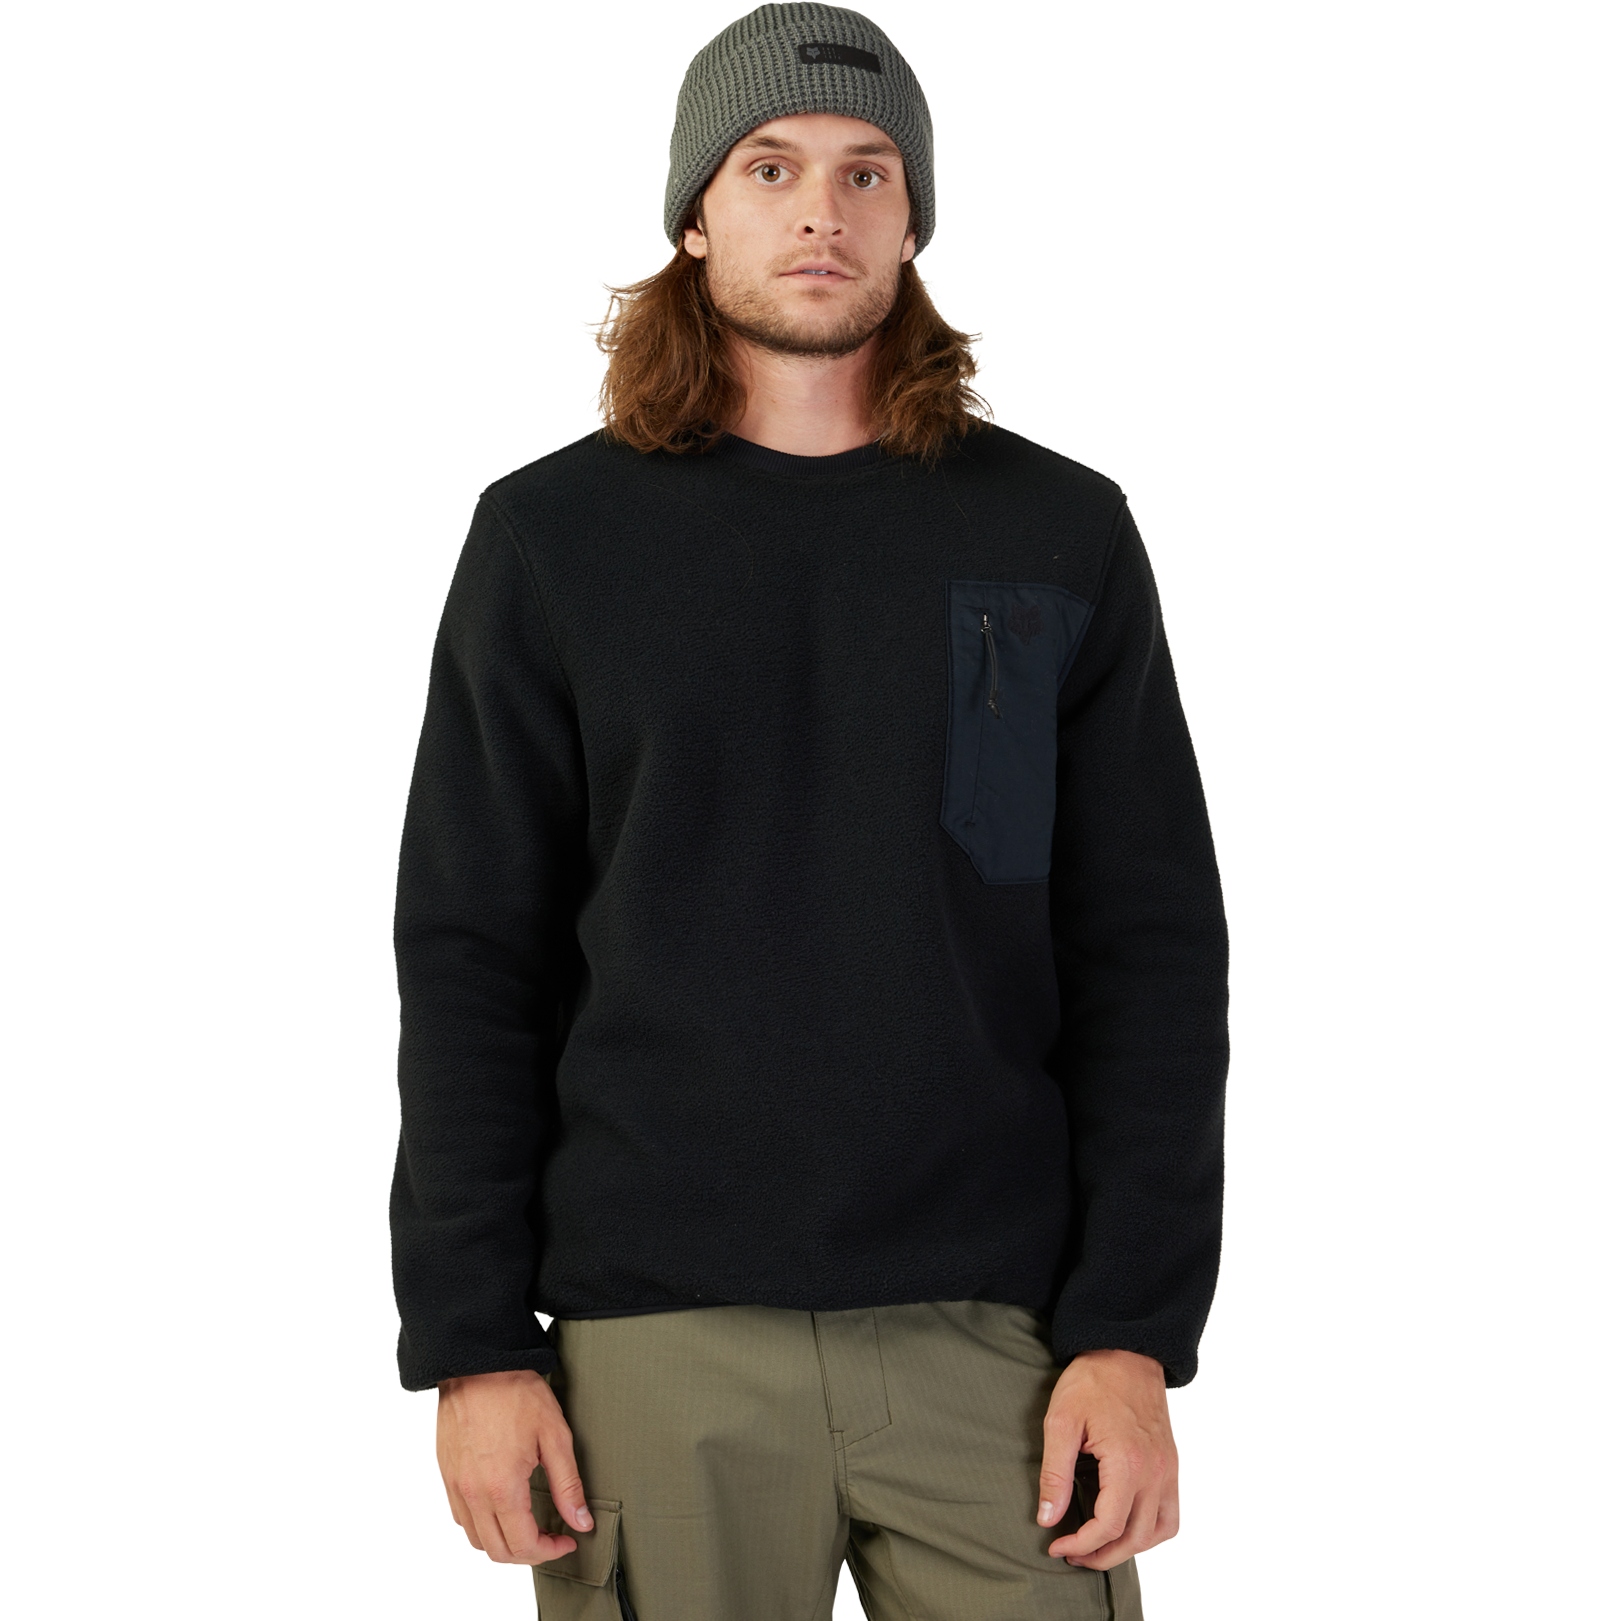 Produktbild von FOX Survivalist Sherpa Fleece Crew Sweatshirt - schwarz